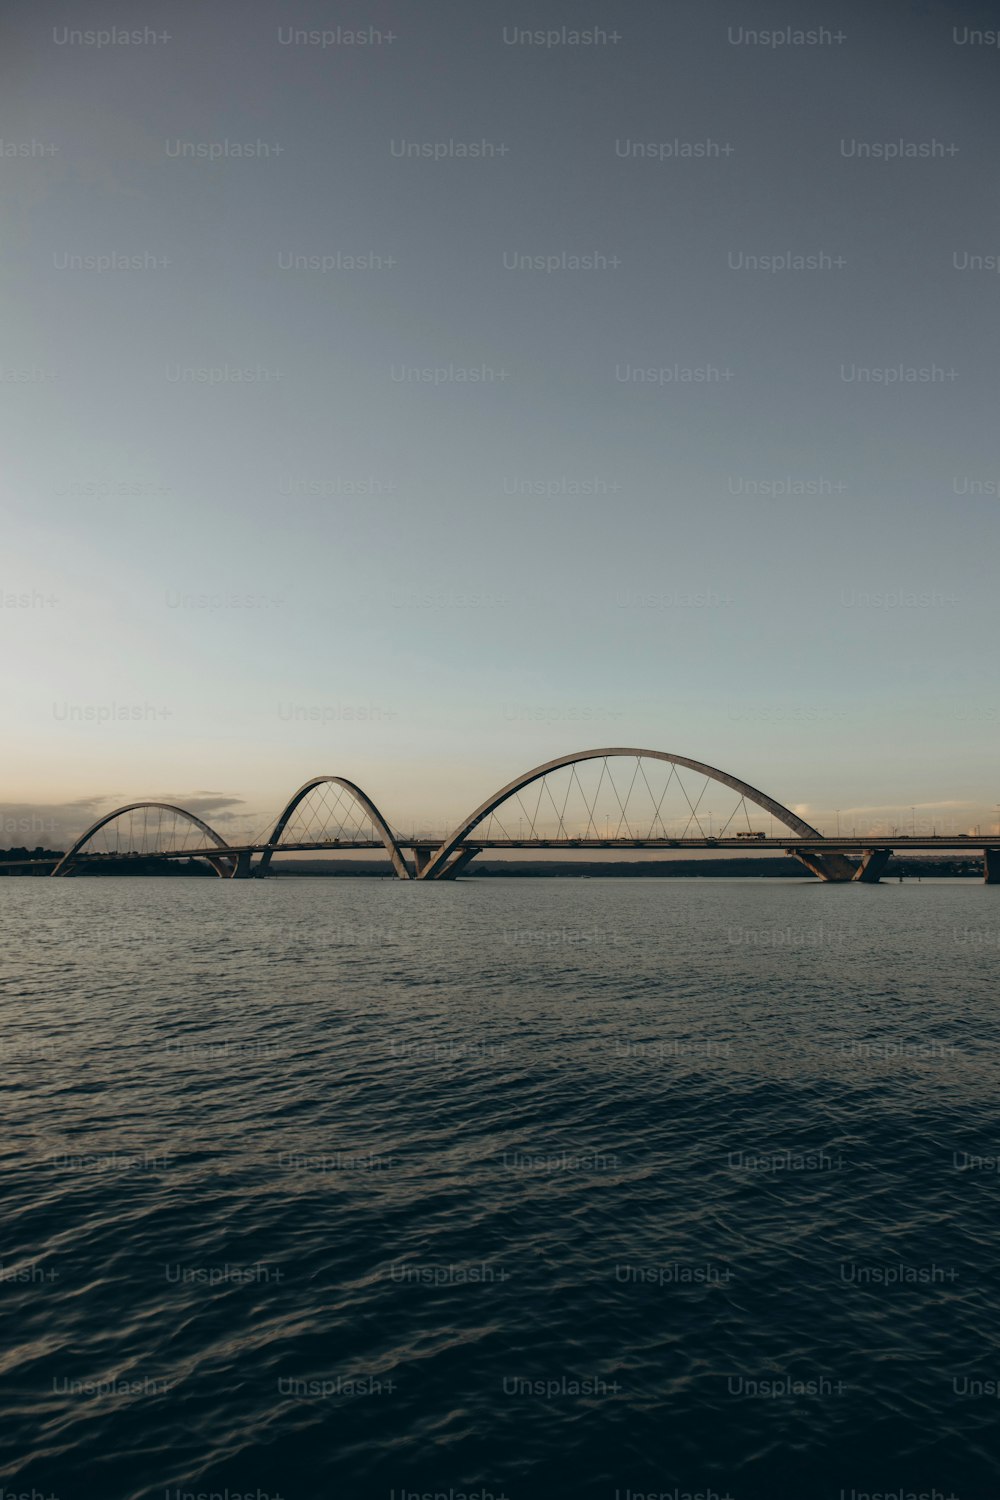 cool arch bridges